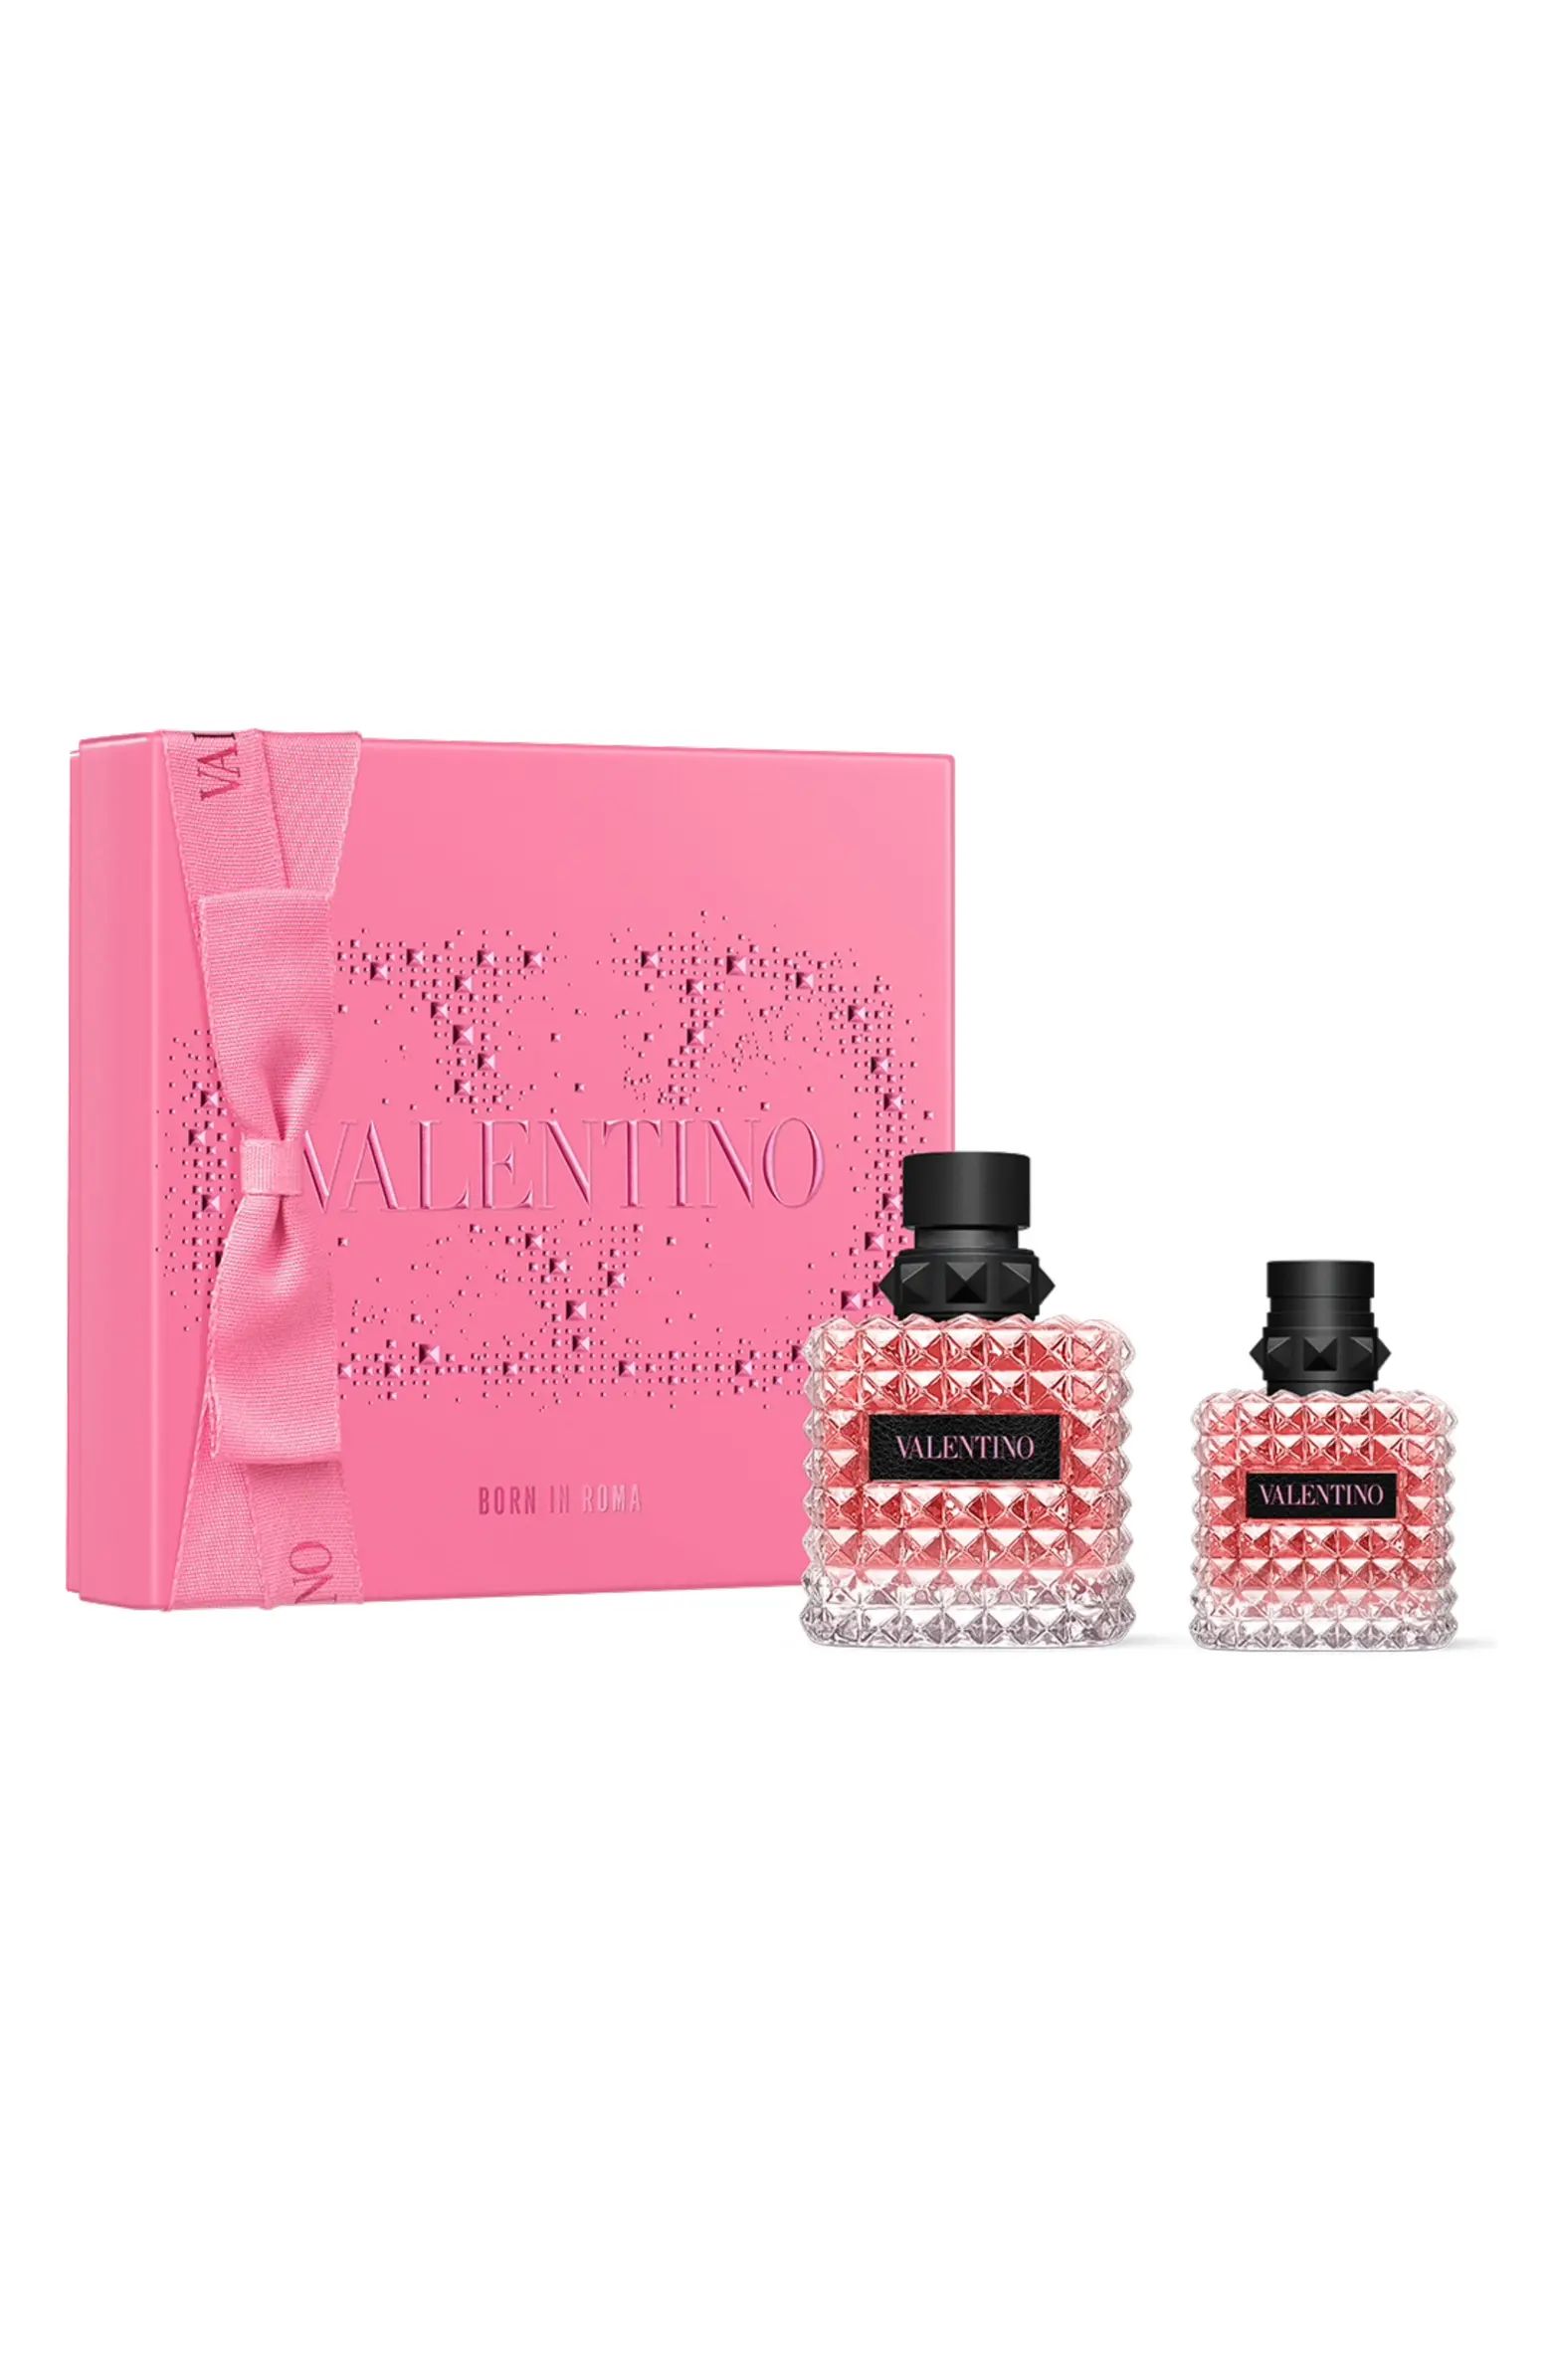 Donna Born in Roma Eau de Parfum 2-Piece Gift Set $232 Value | Nordstrom